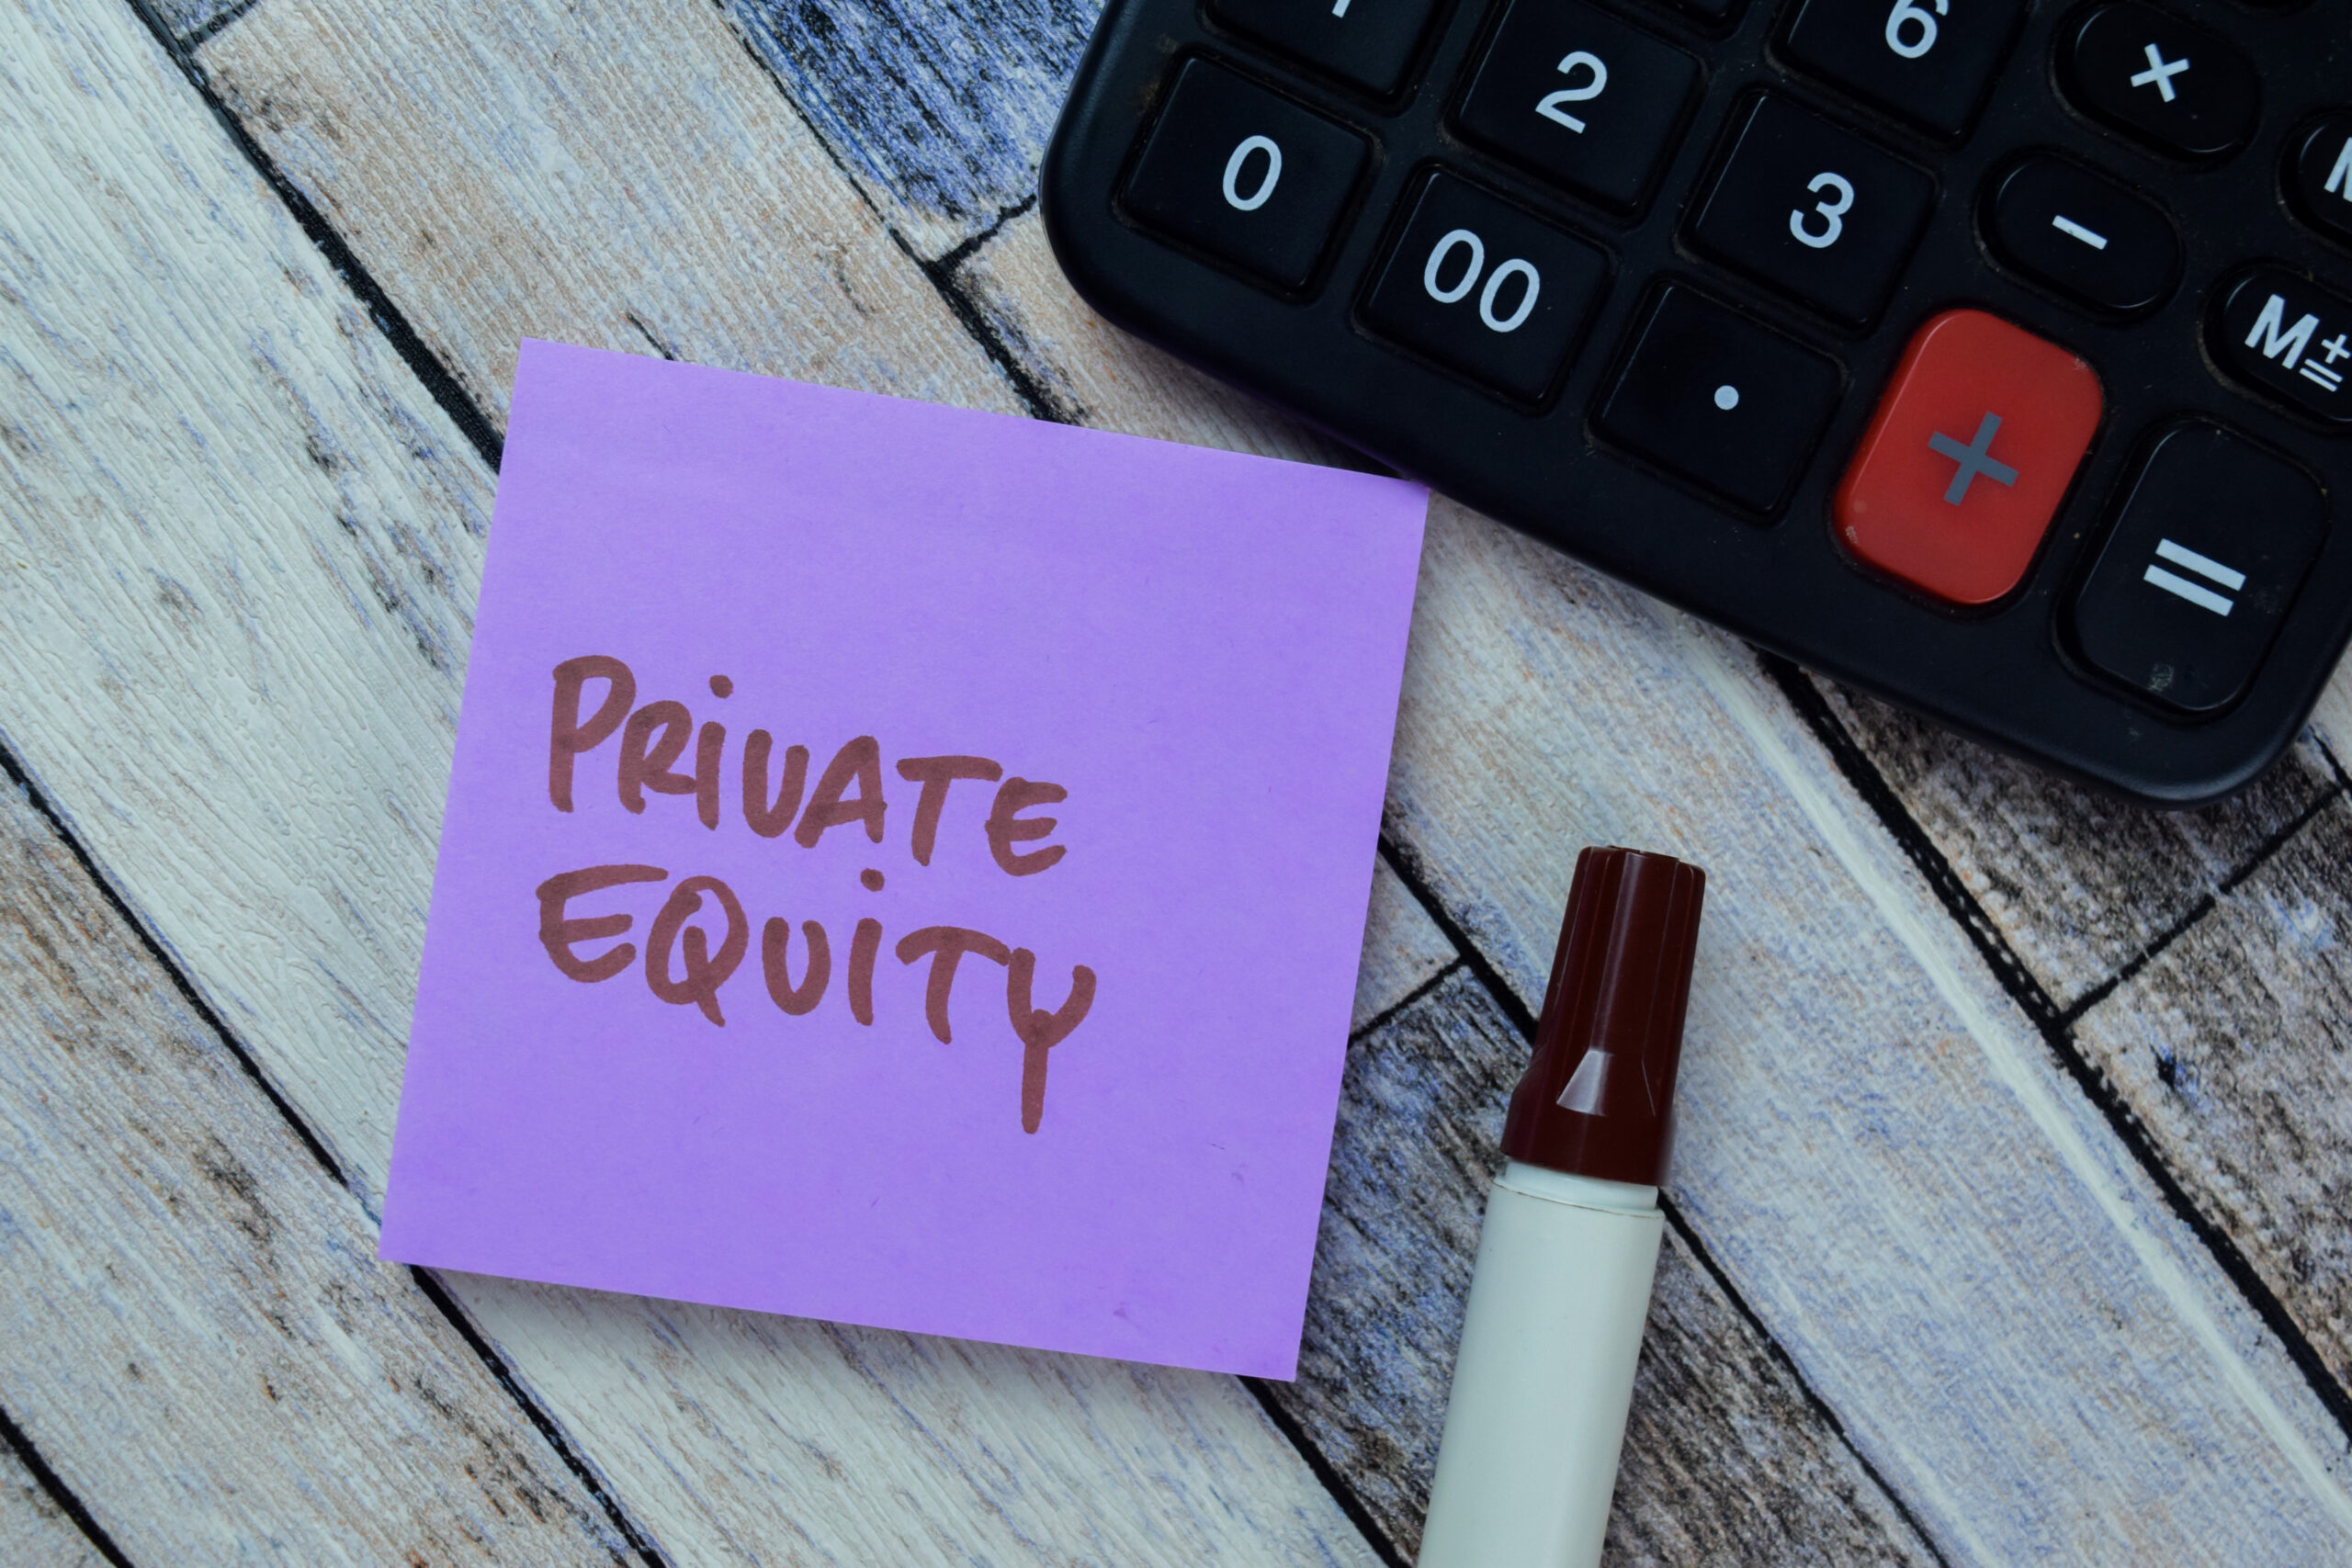 Post-it sur une table en bois, sur lequel est écrit "Private Equity" au marqueur